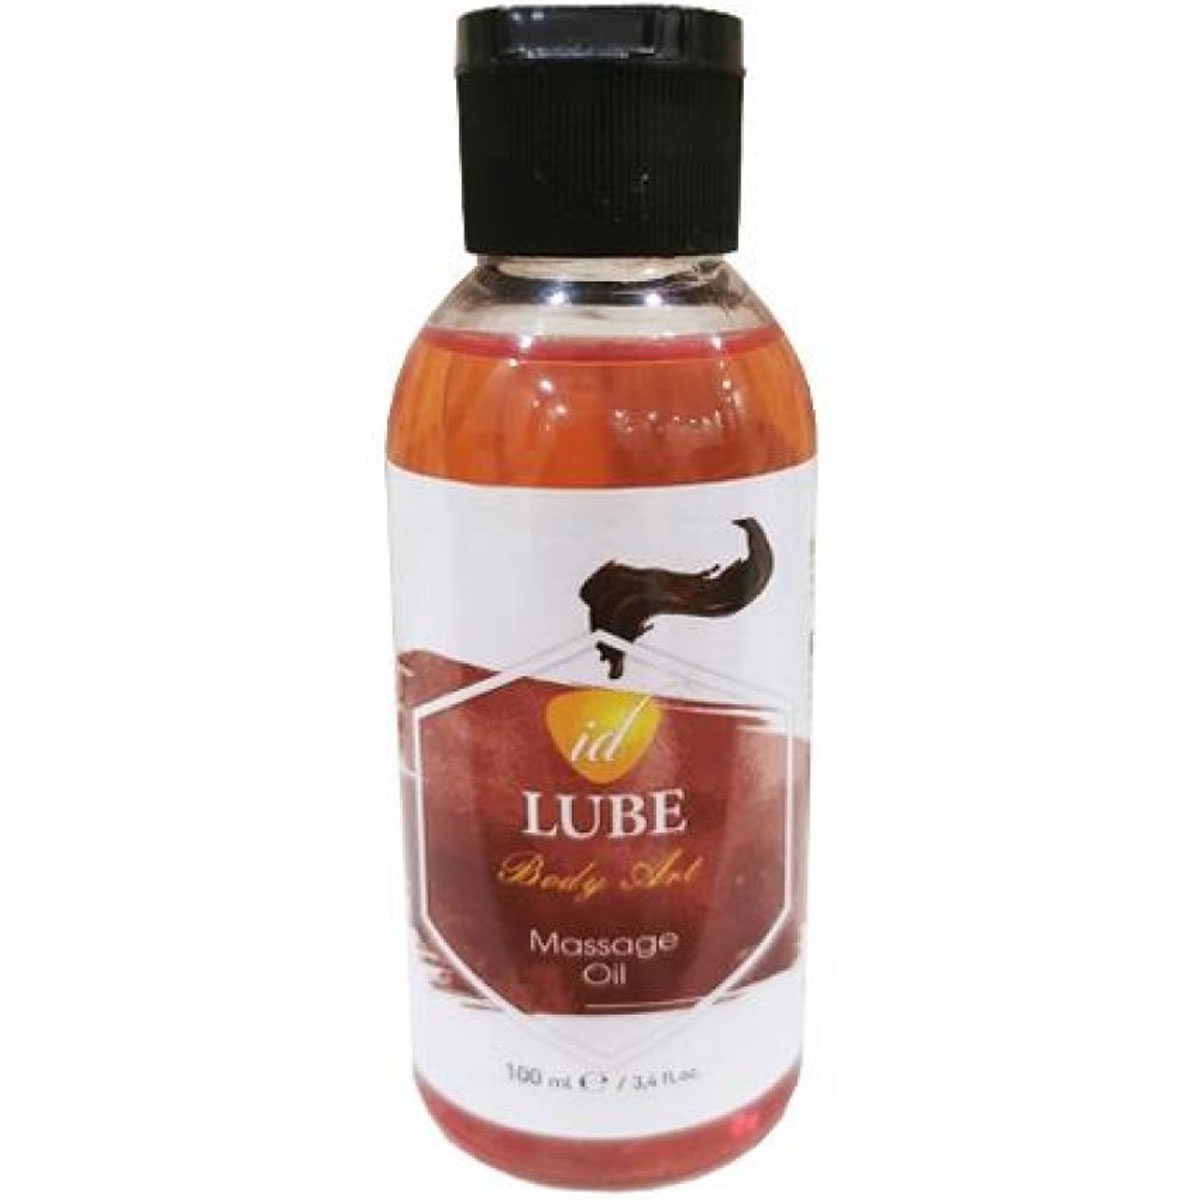 ID Lube Body Art Massage Oil ikolatal Erotik Masaj Ya 100 ml C-5088